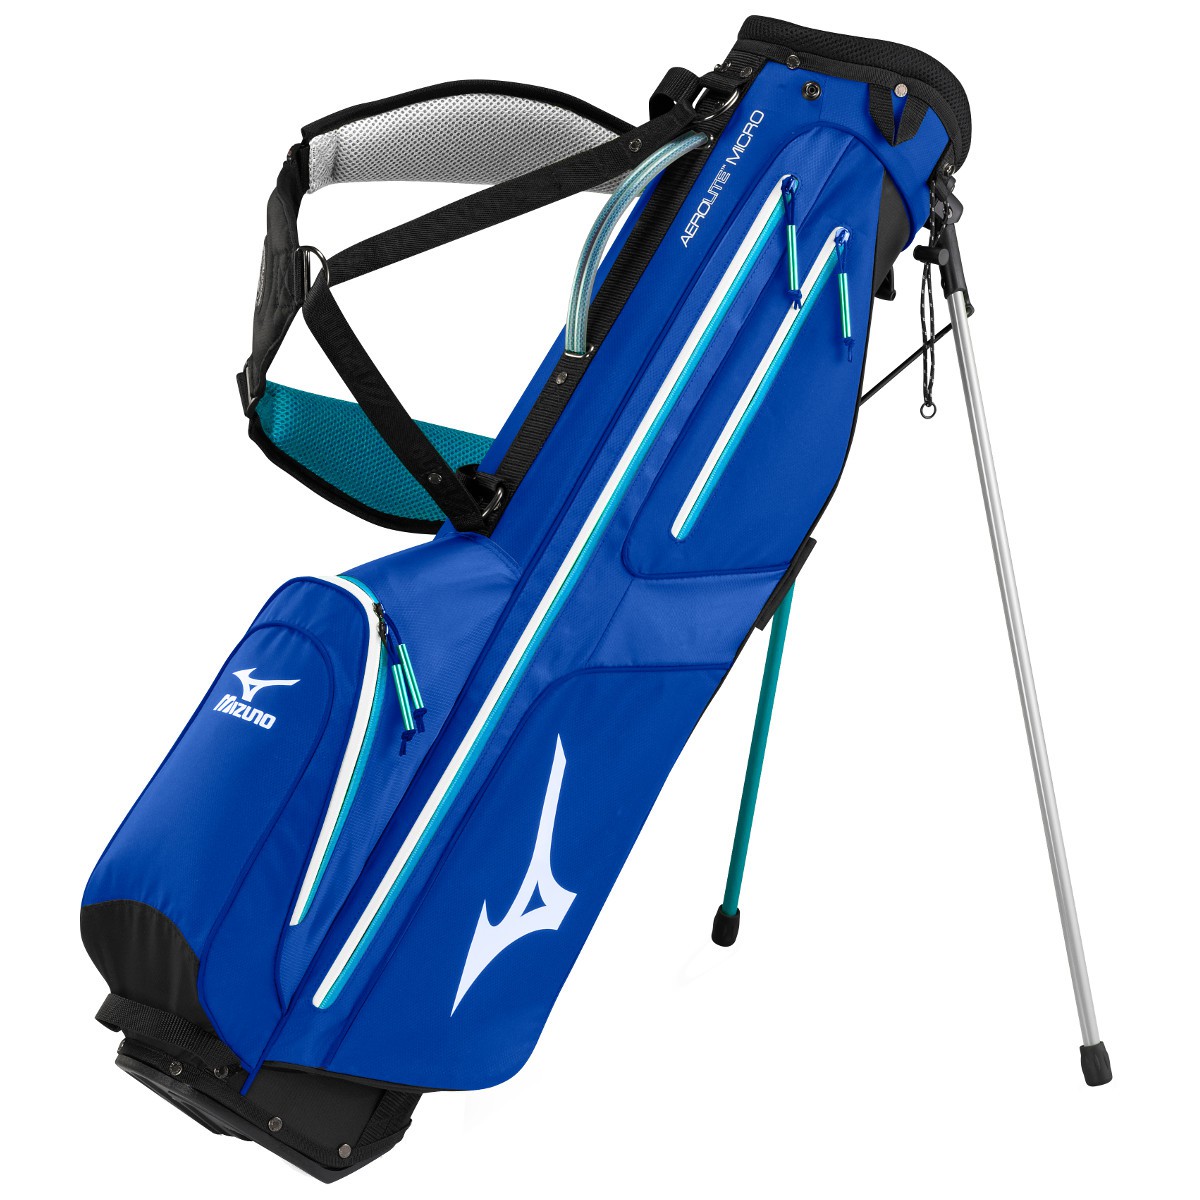 gras Durf factor Mizuno Aerolite Micro 06 Standbag / Golfbag günstig kaufen | Golflädchen